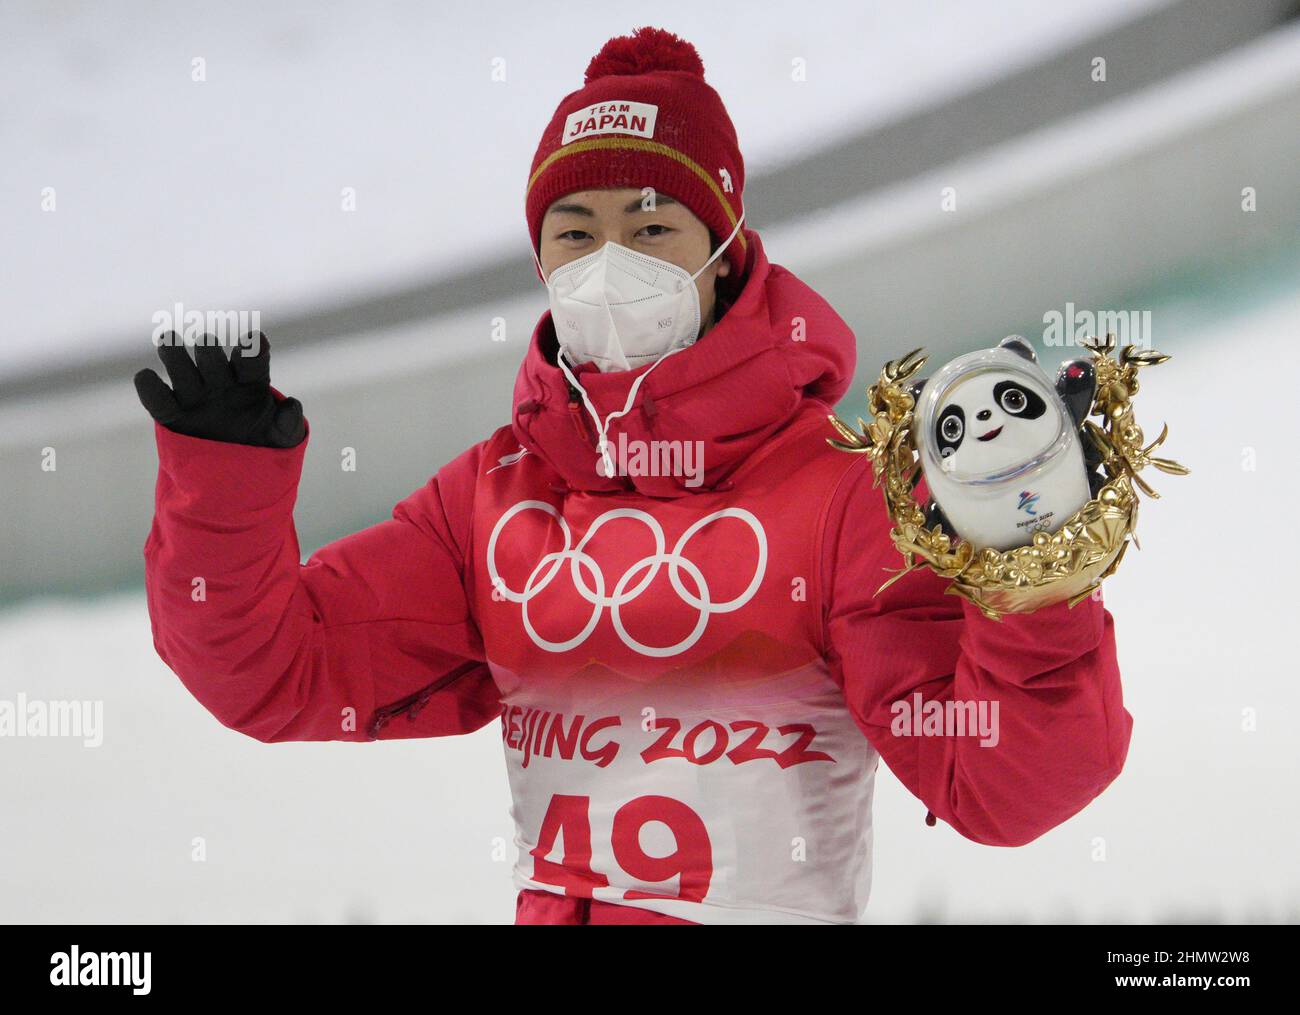 Zhangjiakou, China. 12th Feb, 2022. El medallista de plata Ryoyu Kobayashi de Japón ondea después de que los hombres de esquí saltaren individuales finales de la Colina Grande en los Juegos Olímpicos de Invierno 2022 en Zhangjiakou, China el sábado, 12 de febrero de 2022. Marius Lindvik de Noruega ganó la medalla de oro y Karl Geiger de Alemania ganó la medalla de bronce. Foto de Bob Strong/UPI . Crédito: UPI/Alamy Live News Foto de stock